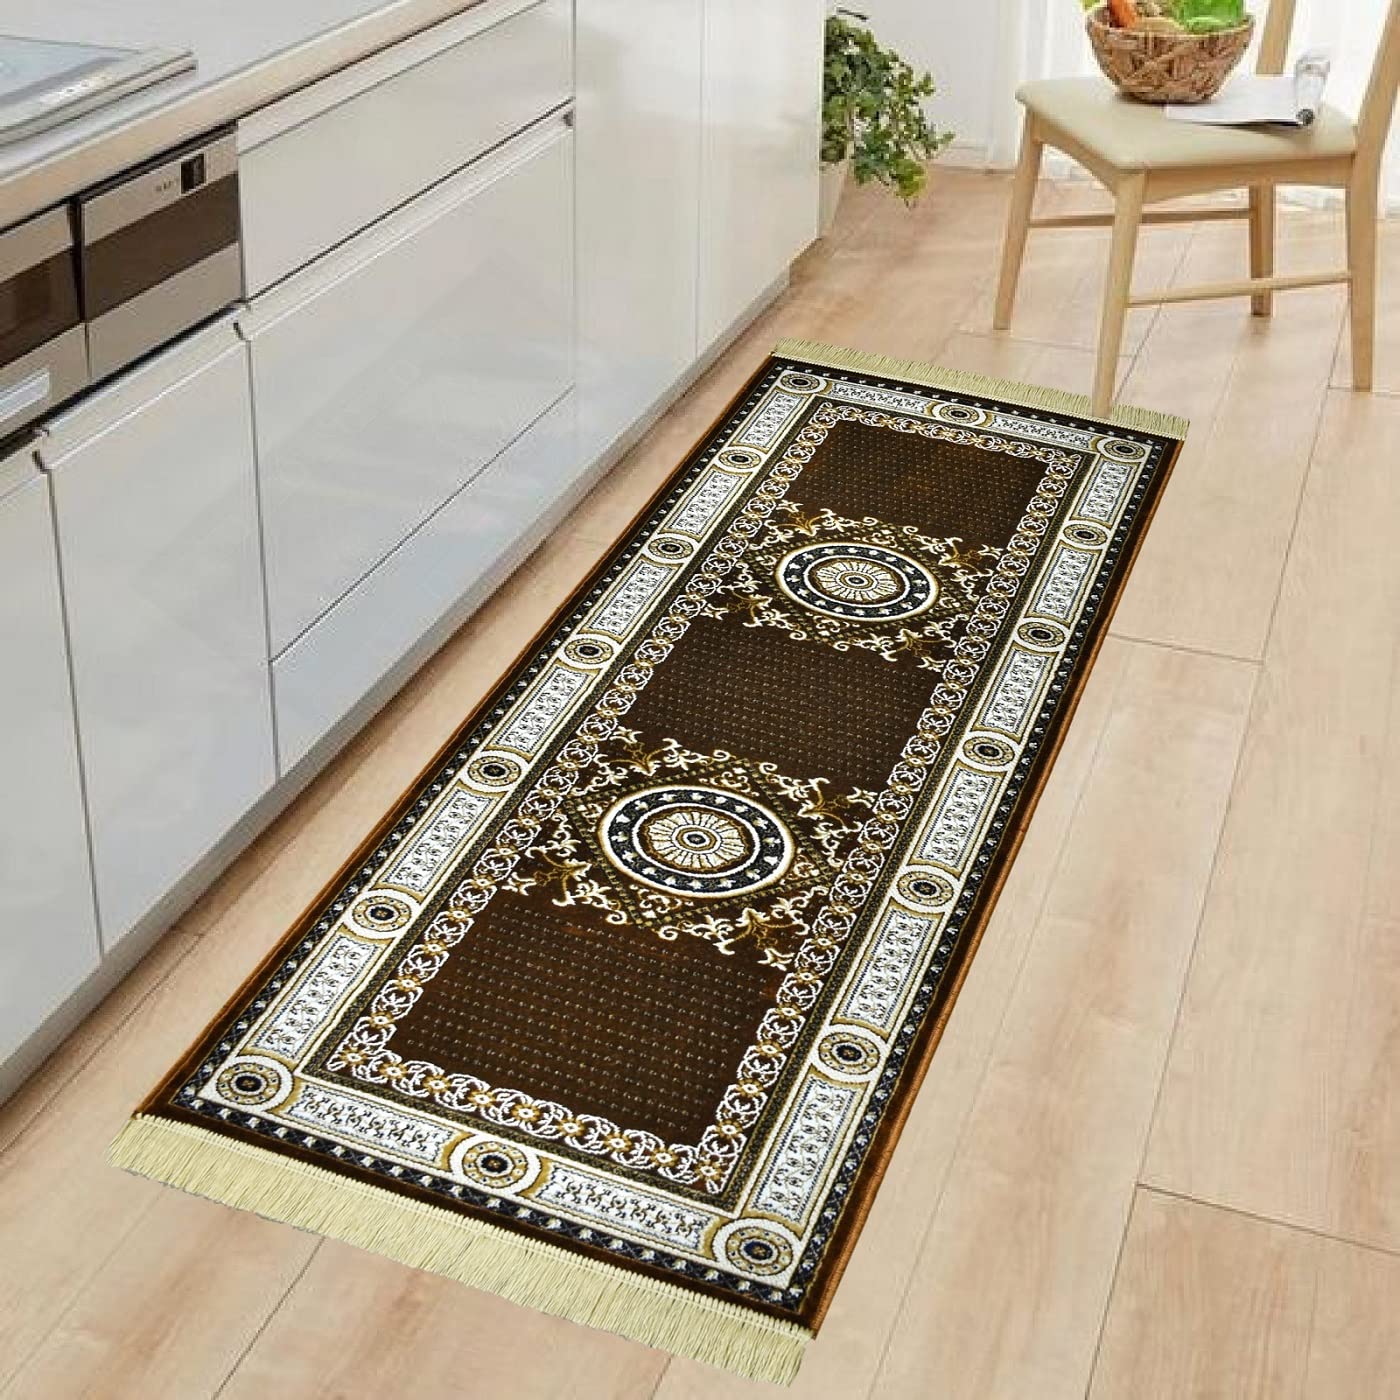 Floor carpet Design